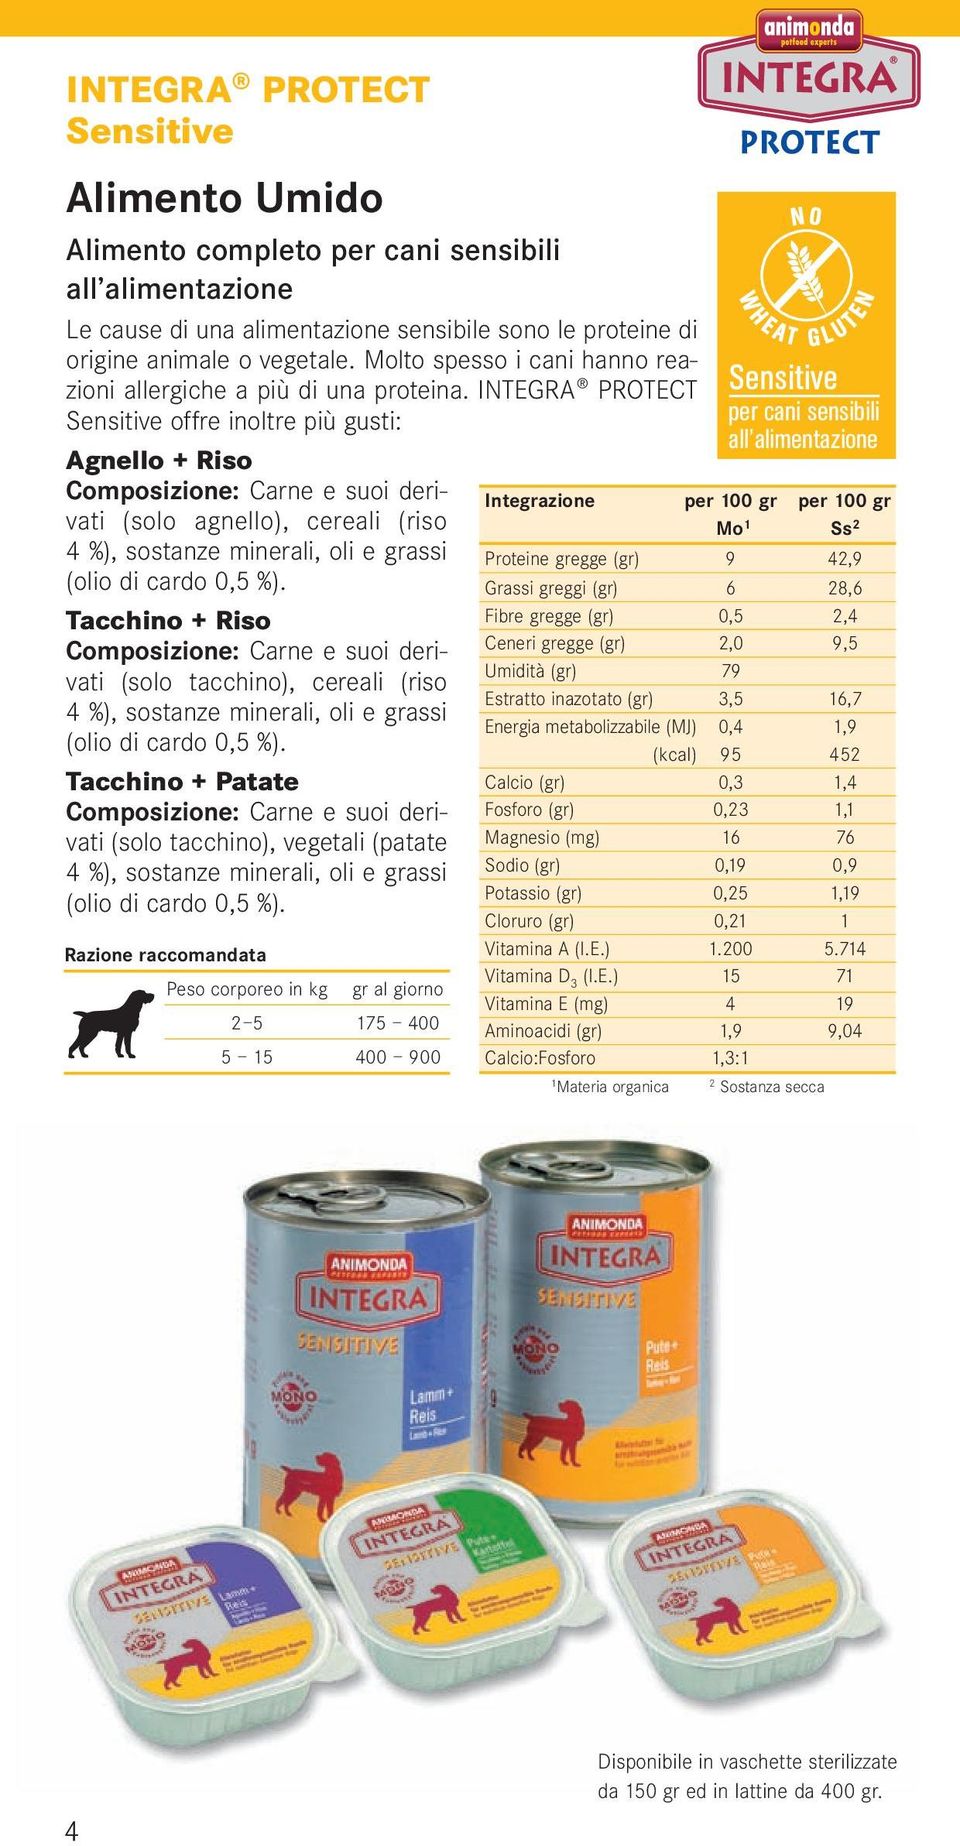 INTEGRA PROTECT Sensitive offre inoltre più gusti: Agnello + Riso Composizione: Carne e suoi derivati (solo agnello), cereali (riso 4 %), sostanze minerali, oli e grassi (olio di cardo 0,5 %).